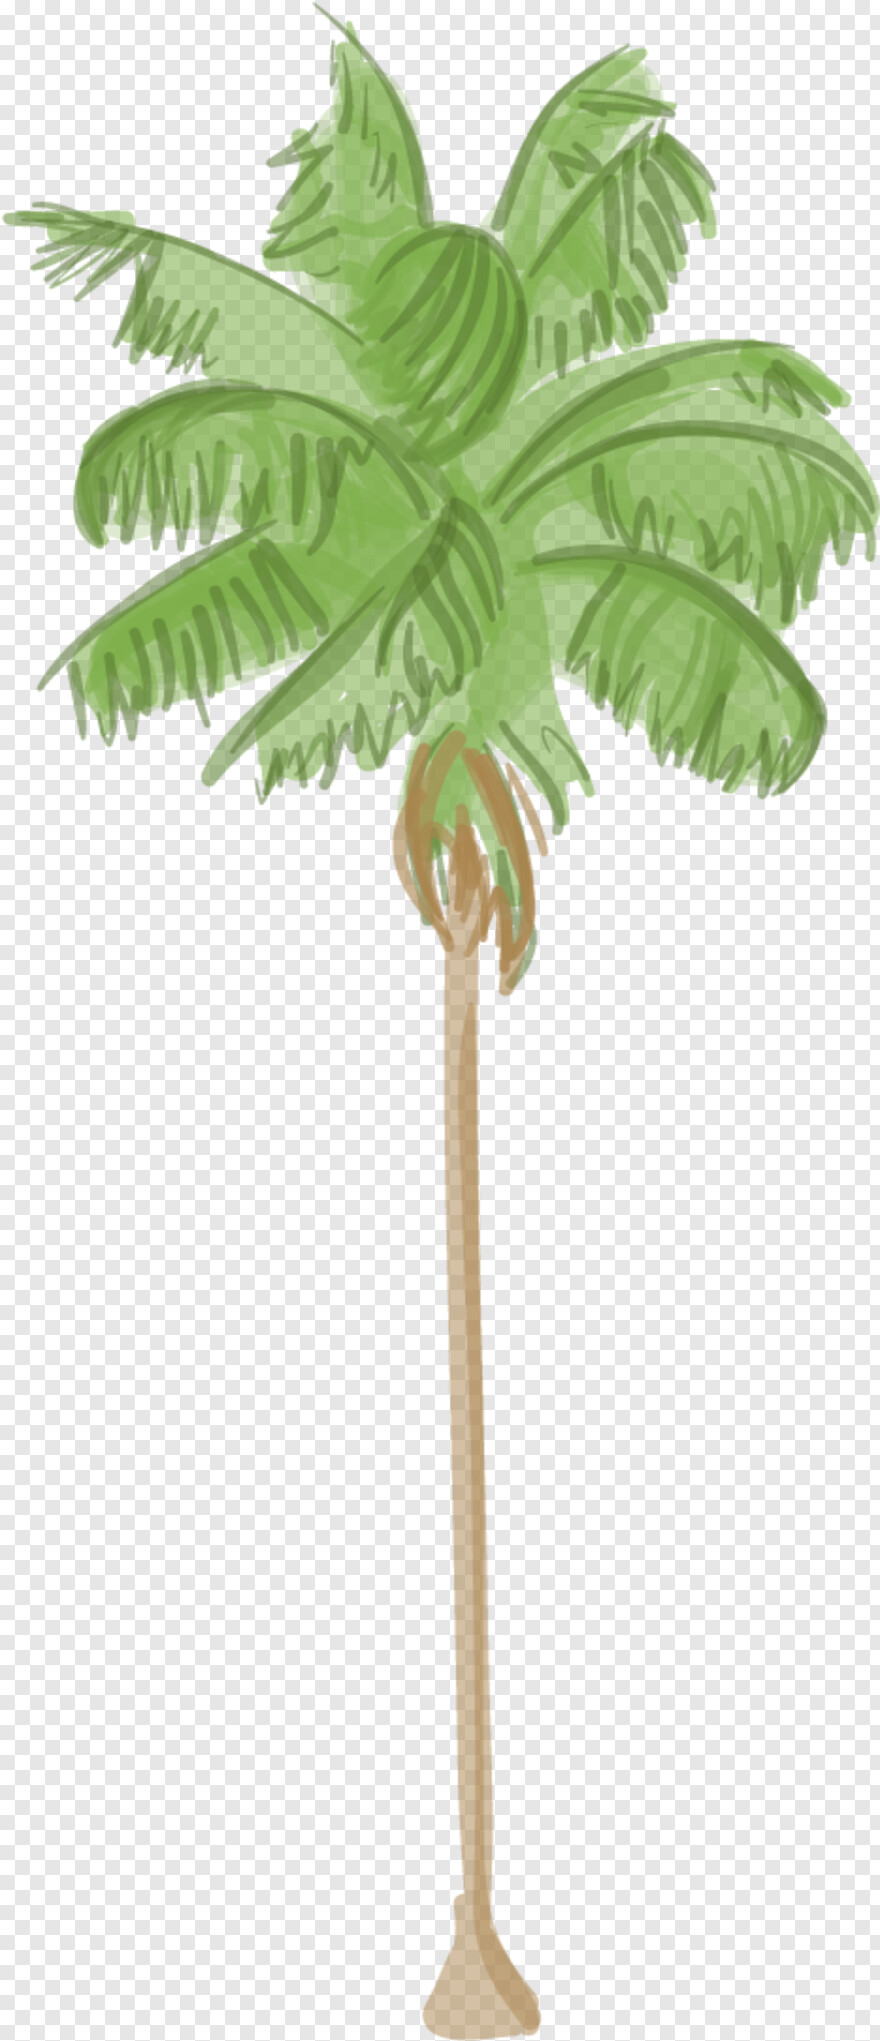 palm-tree-silhouette # 517065